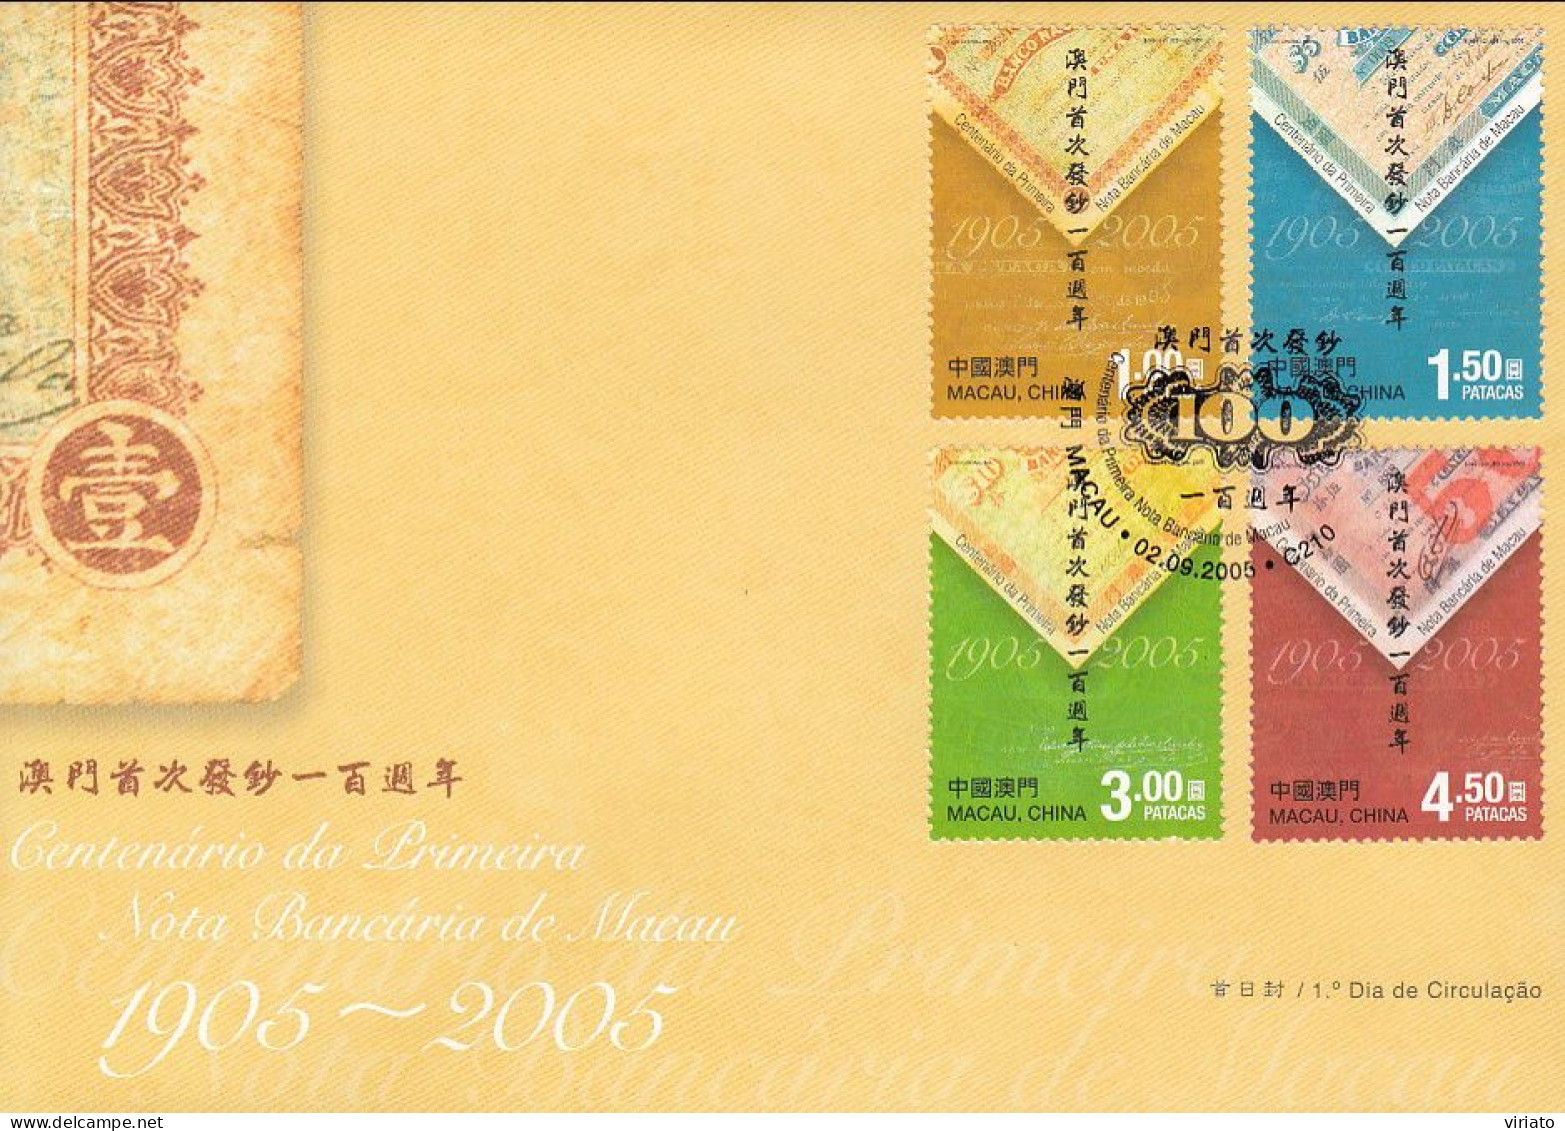 ENA069 - Centenário Da Primeira Nota Bancária De Macau (1905-2005) - 02.09.2005 - FDC